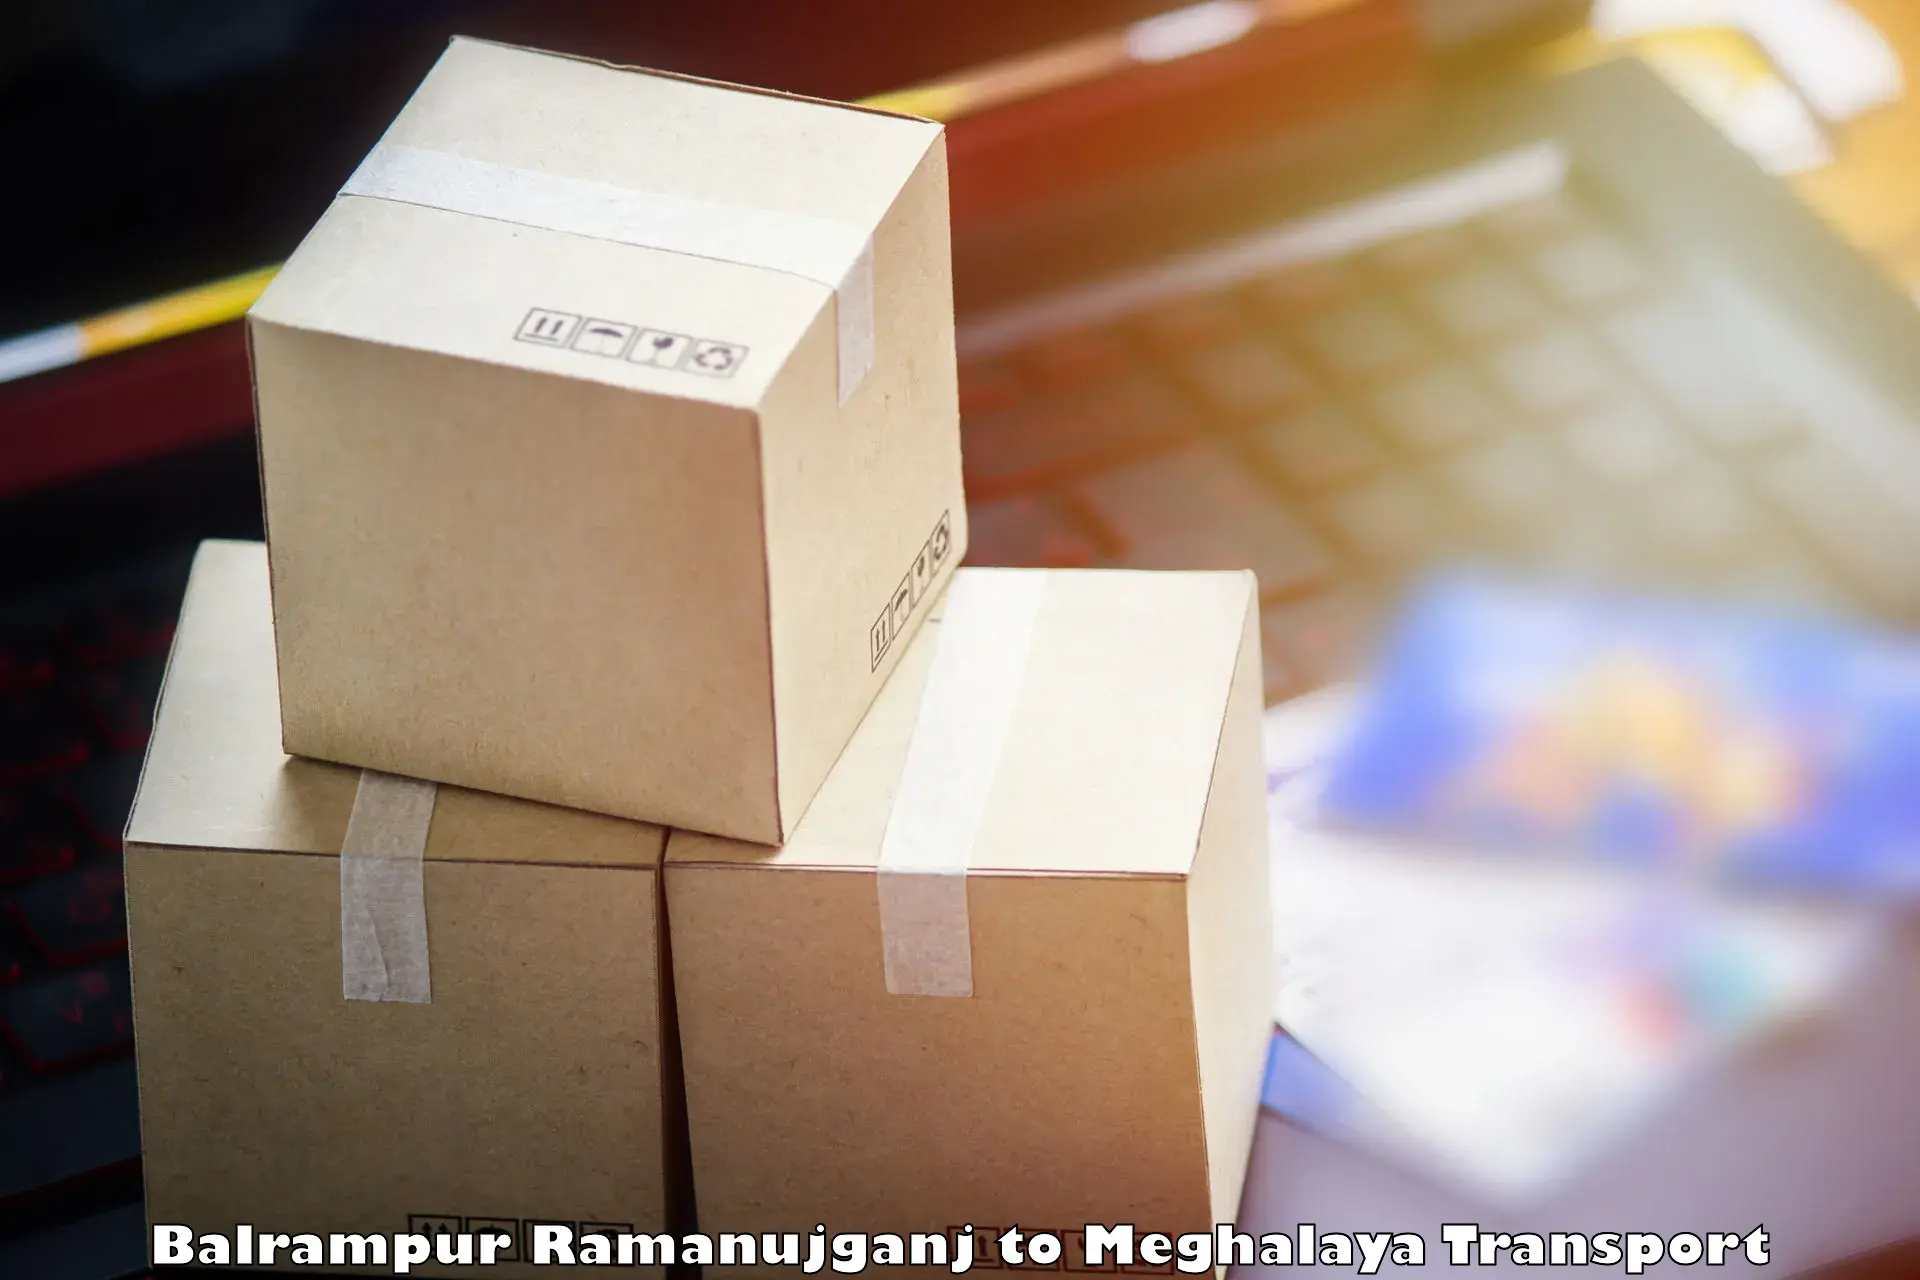 Cargo transportation services Balrampur Ramanujganj to Meghalaya